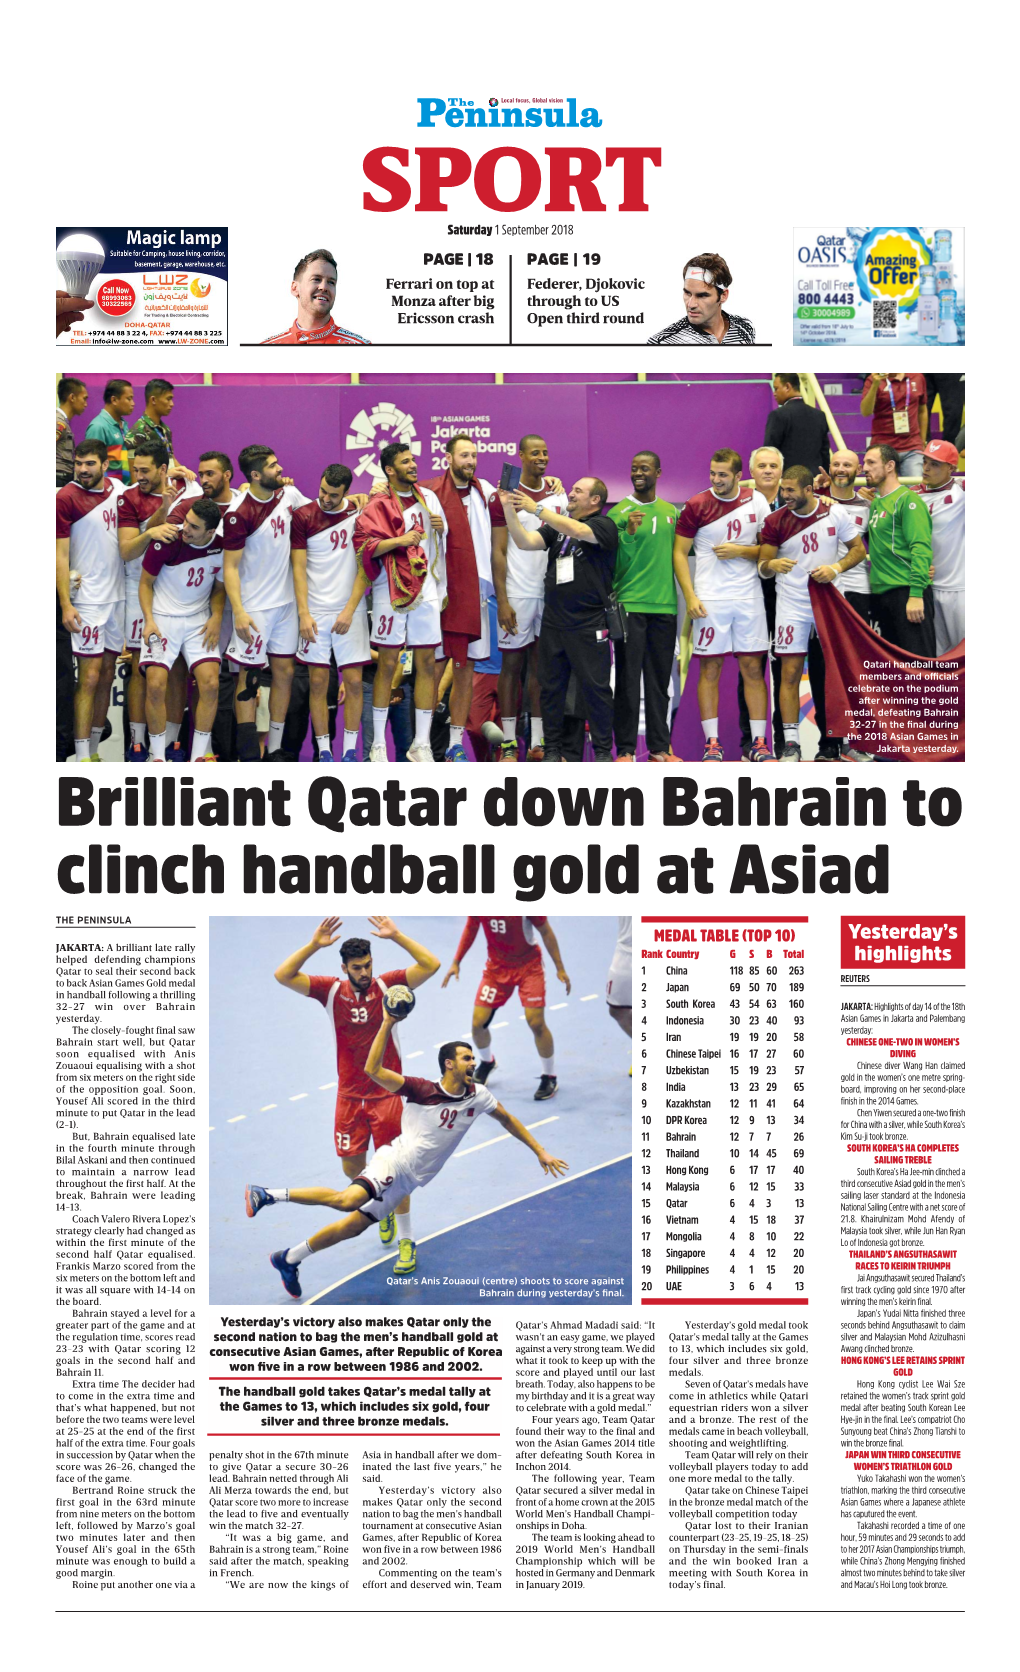 Brilliant Qatar Down Bahrain to Clinch Handball Gold at Asiad